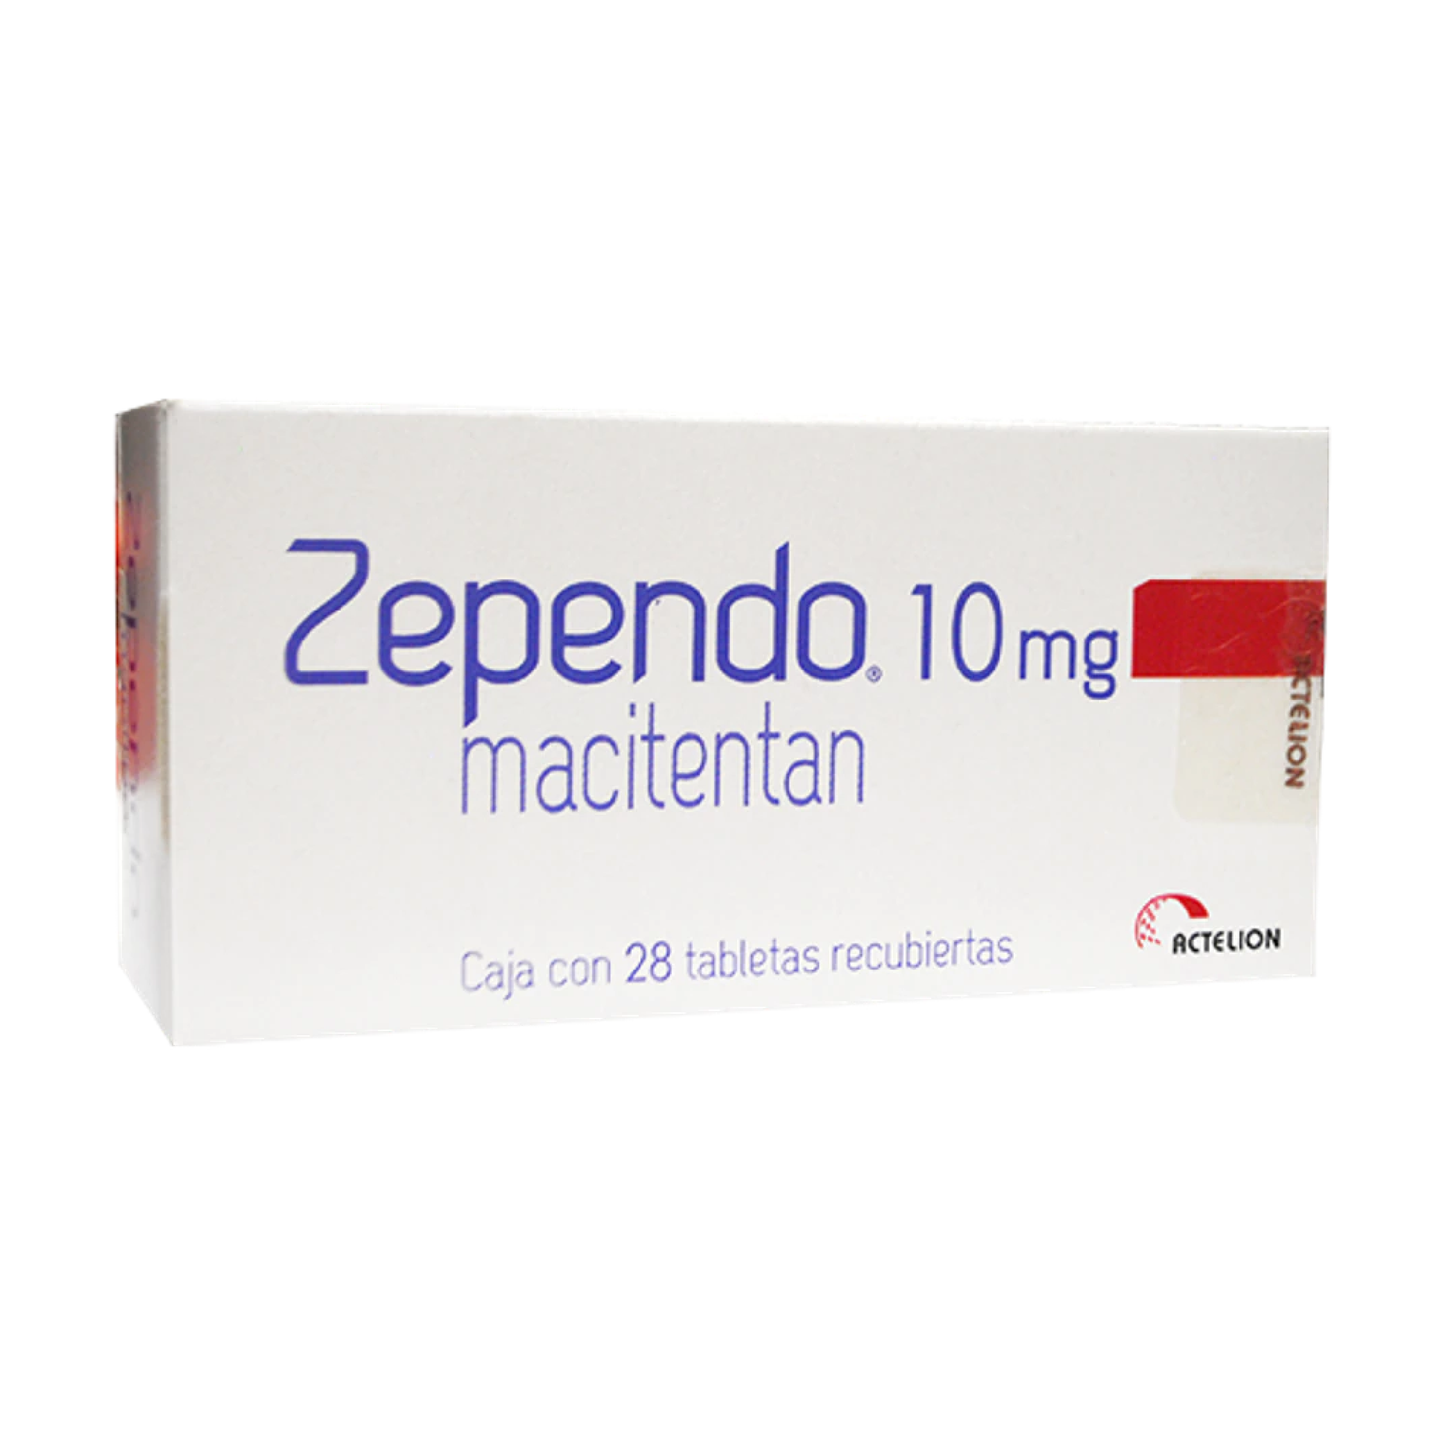 ZEPENDO 10 mg